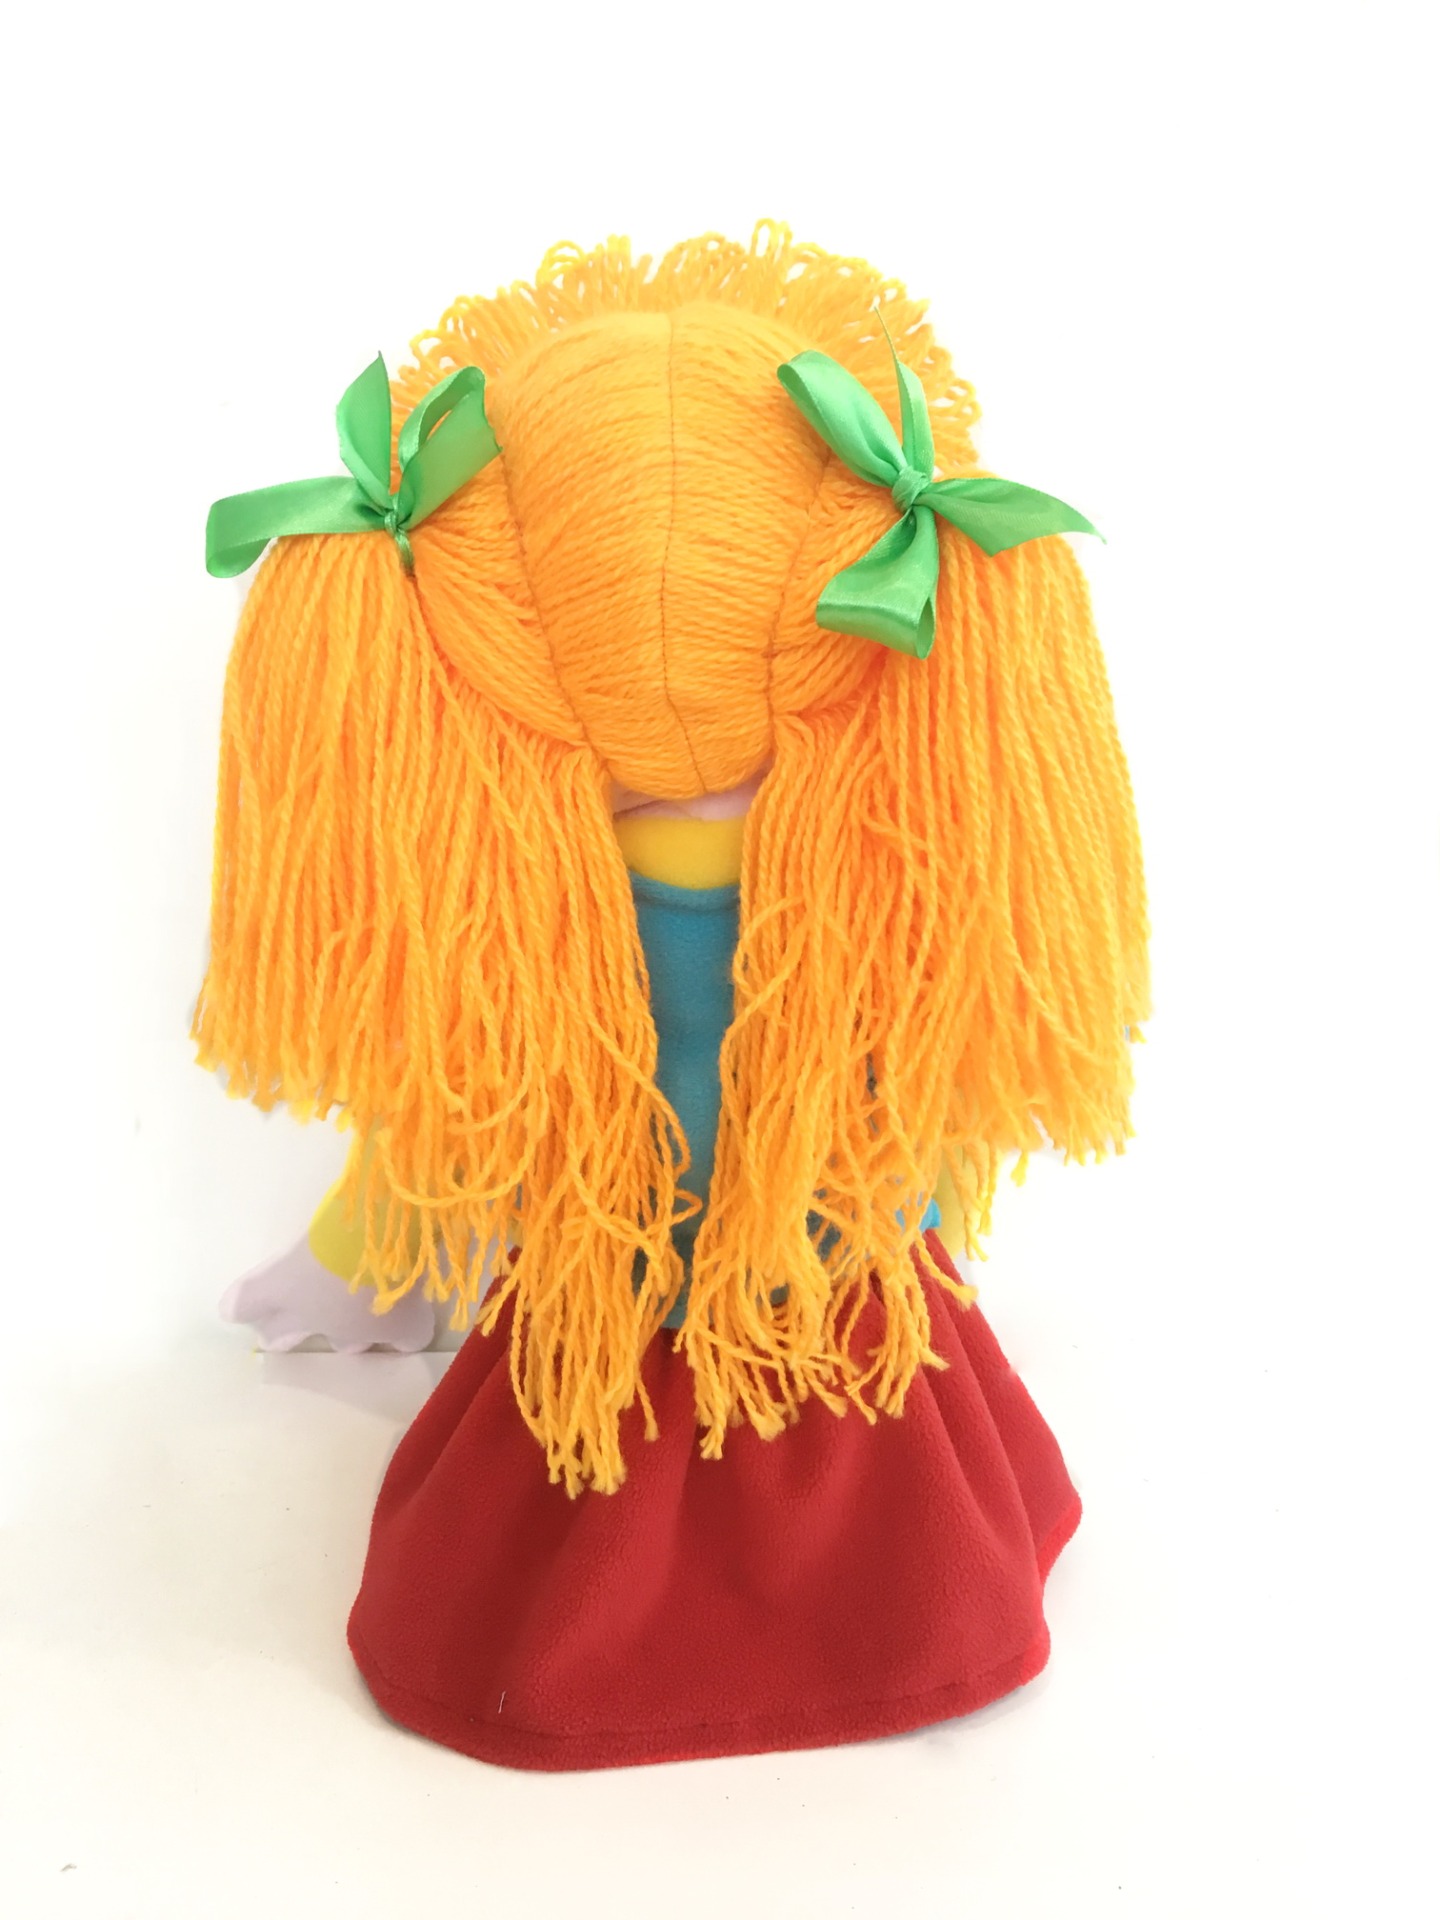 Девочка Рыжик большая - кукла-маппет с открывающимся ртом, 40-45 см